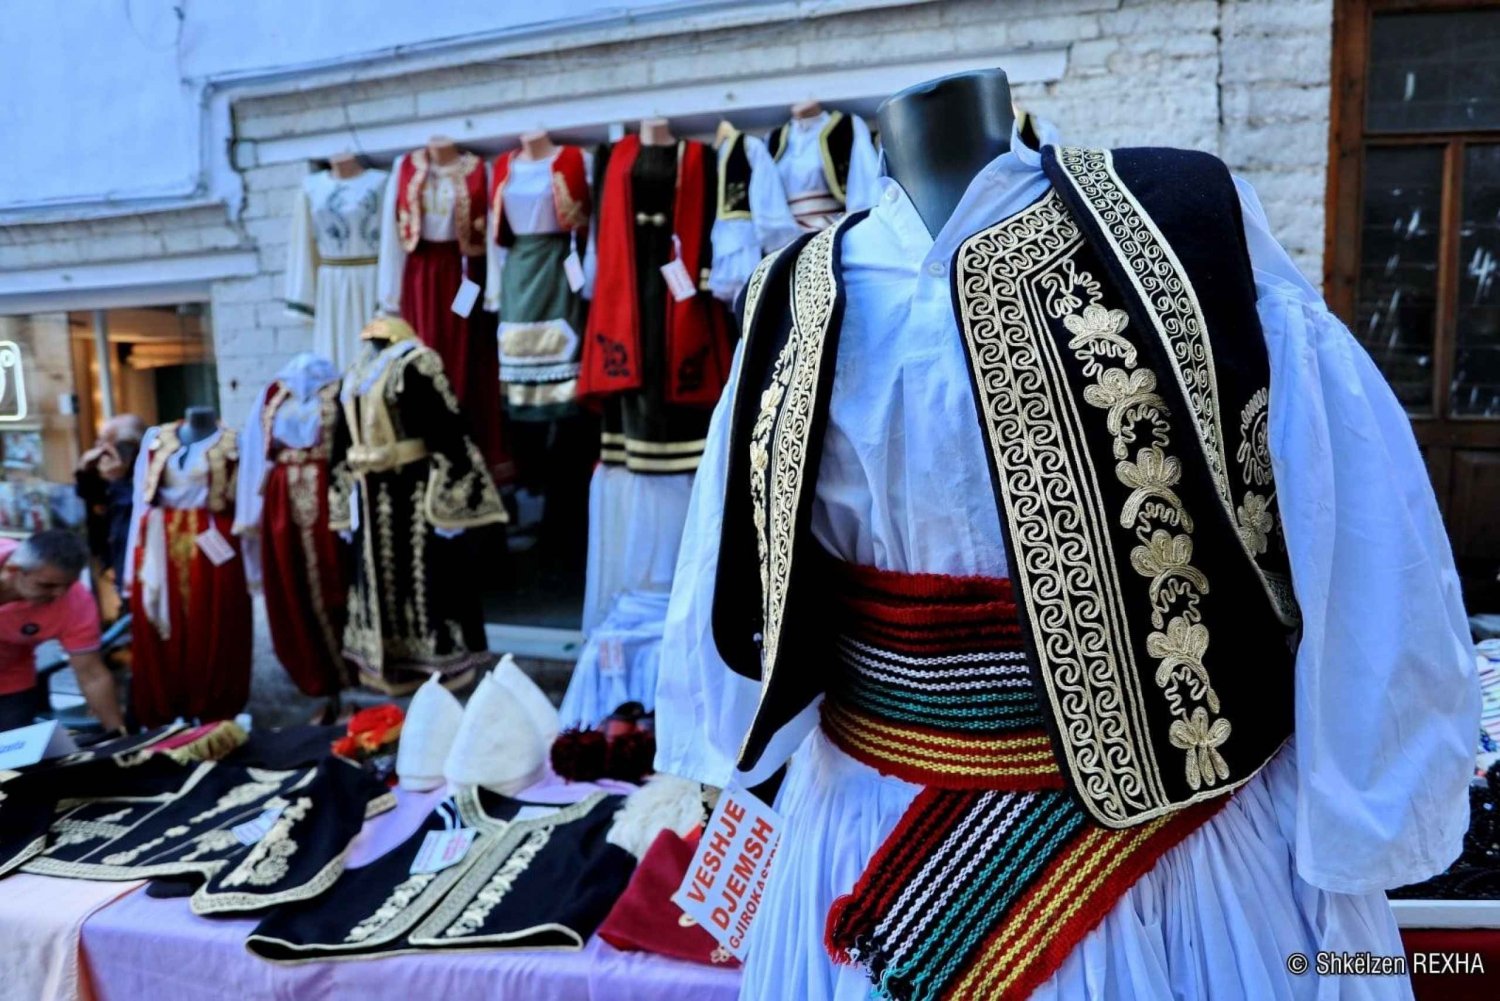 Gjirokaster, le site de l'UNESCO et les costumes traditionnels